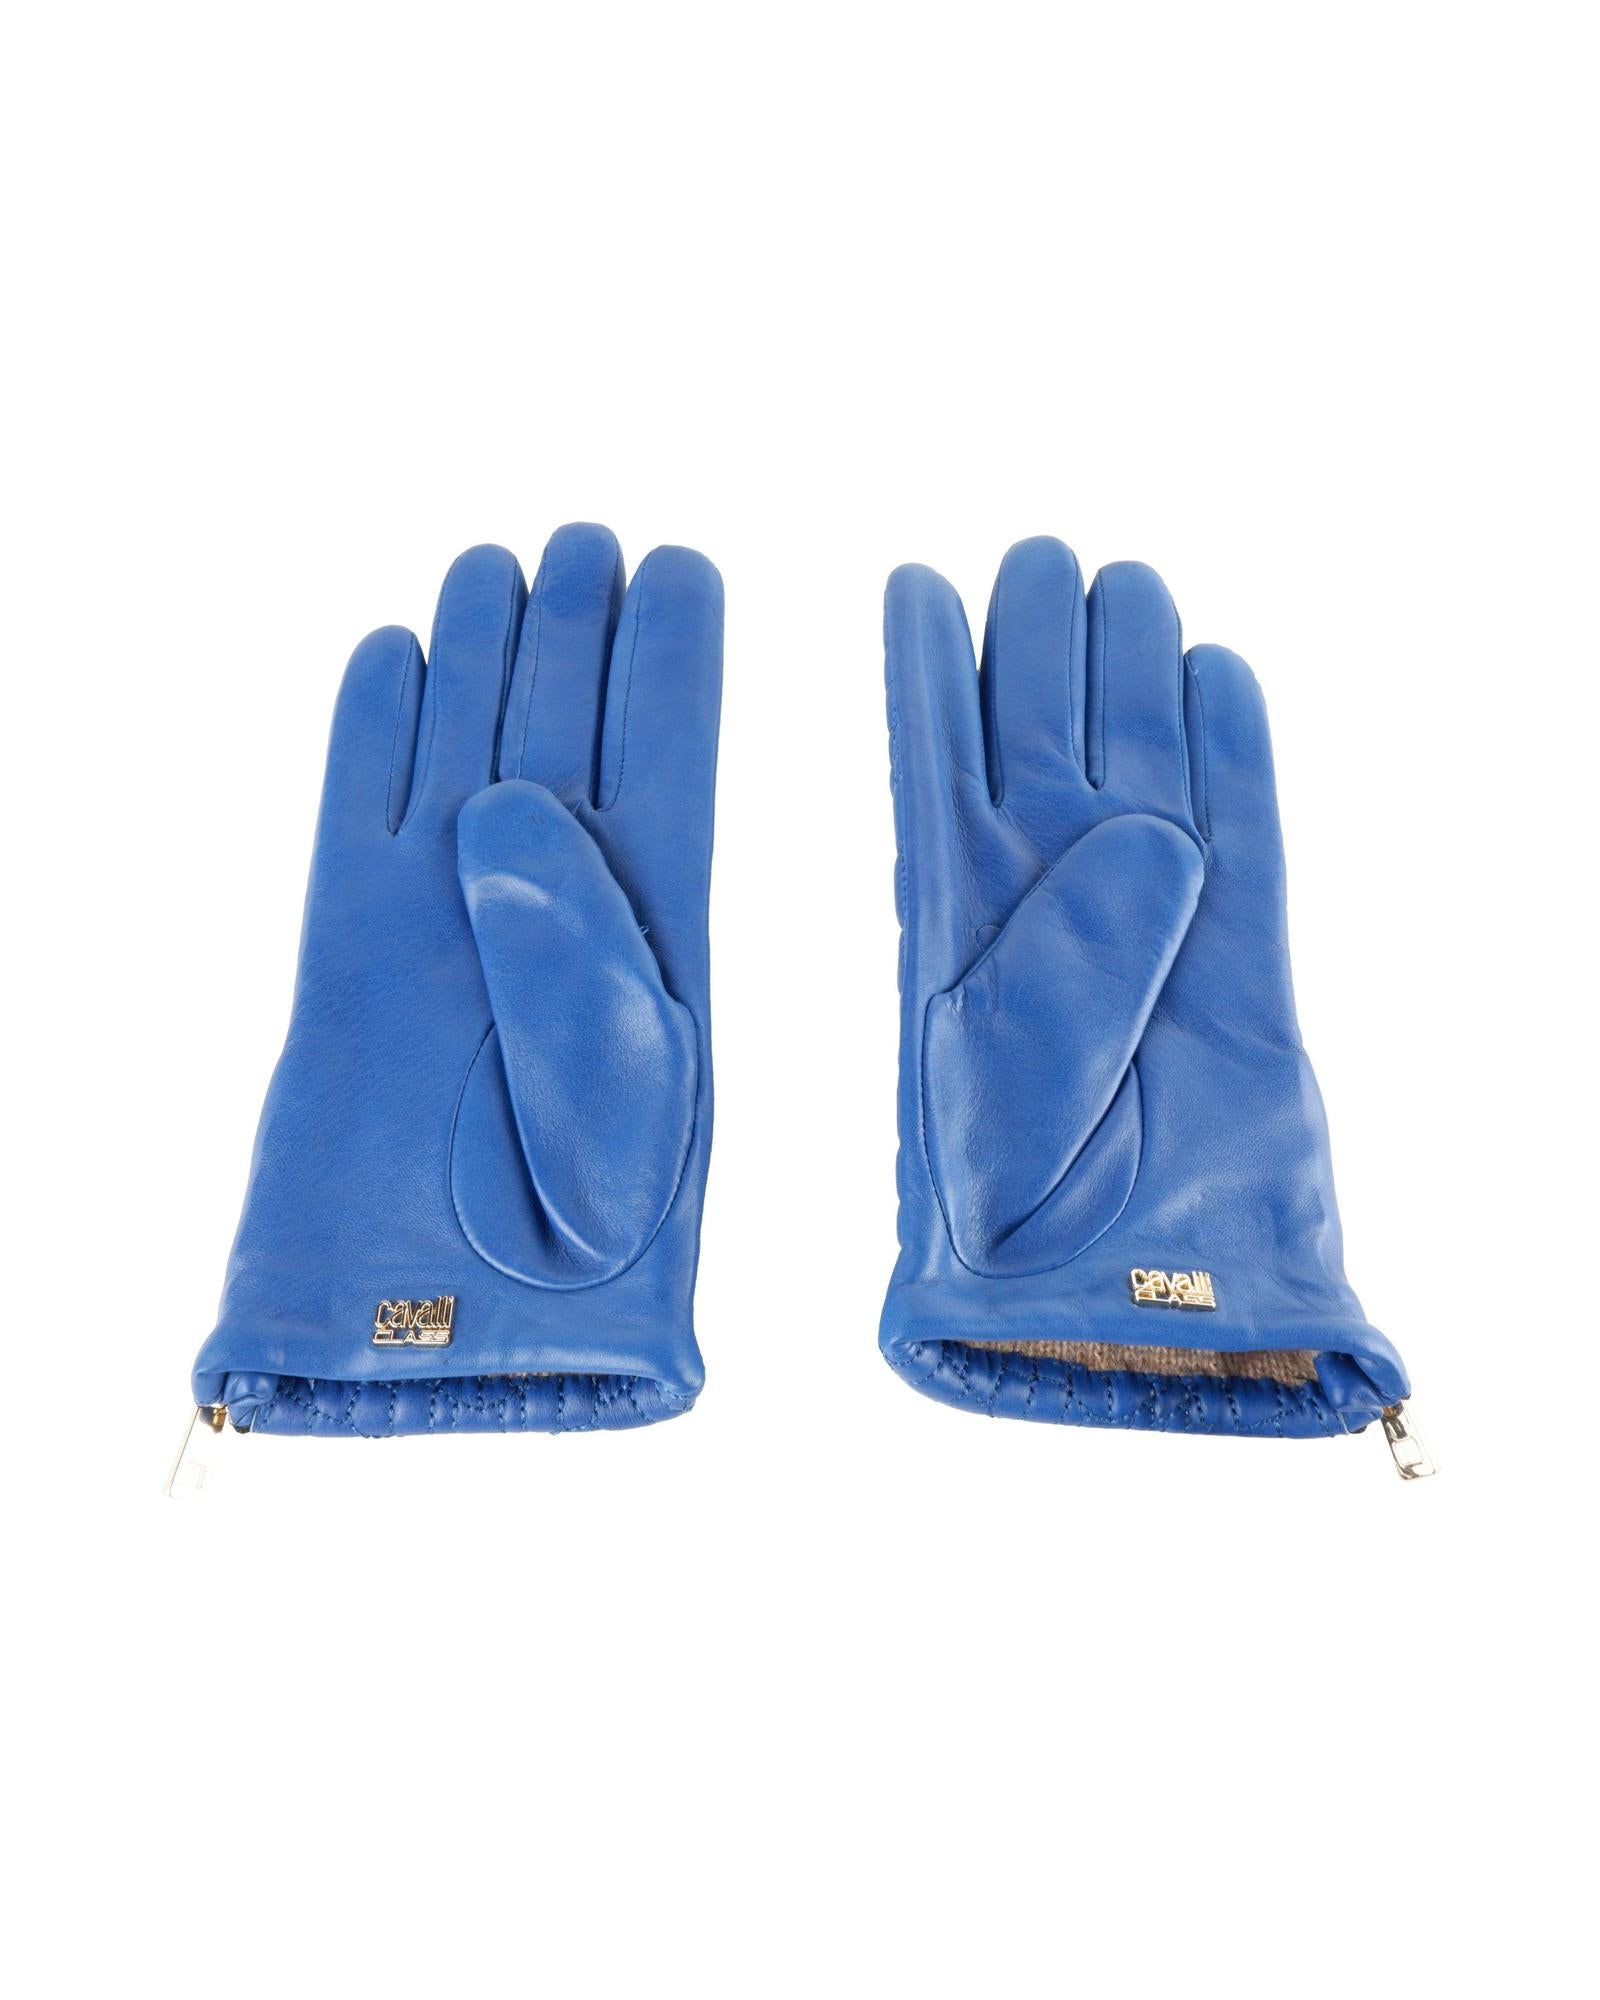 Lady Glove in Blue 7.5 Women